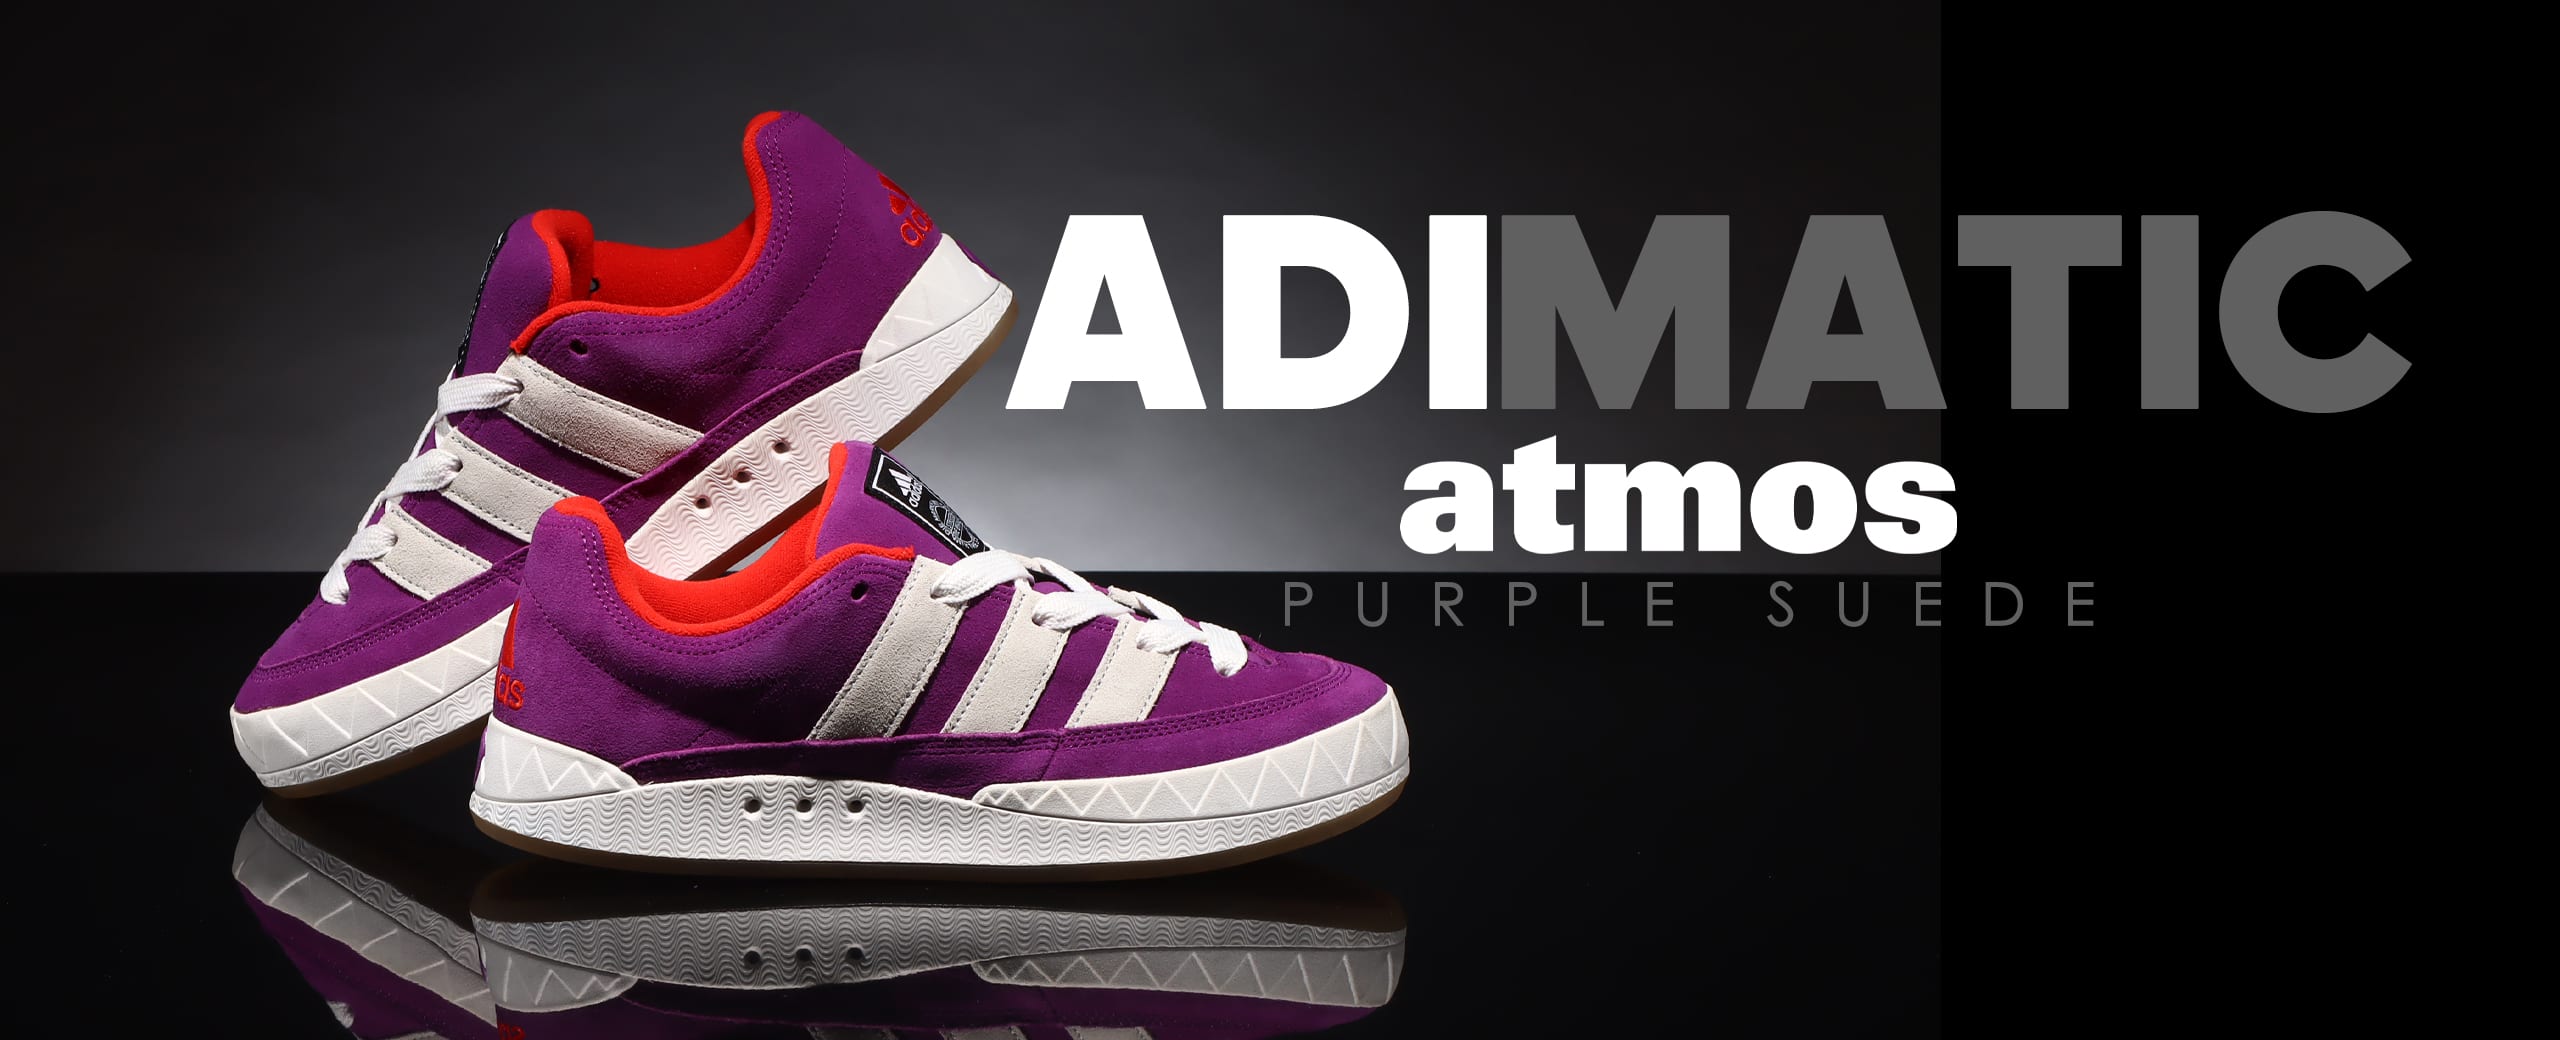 "adidas Originals  adimatic atmos PURPLE SUEDE"